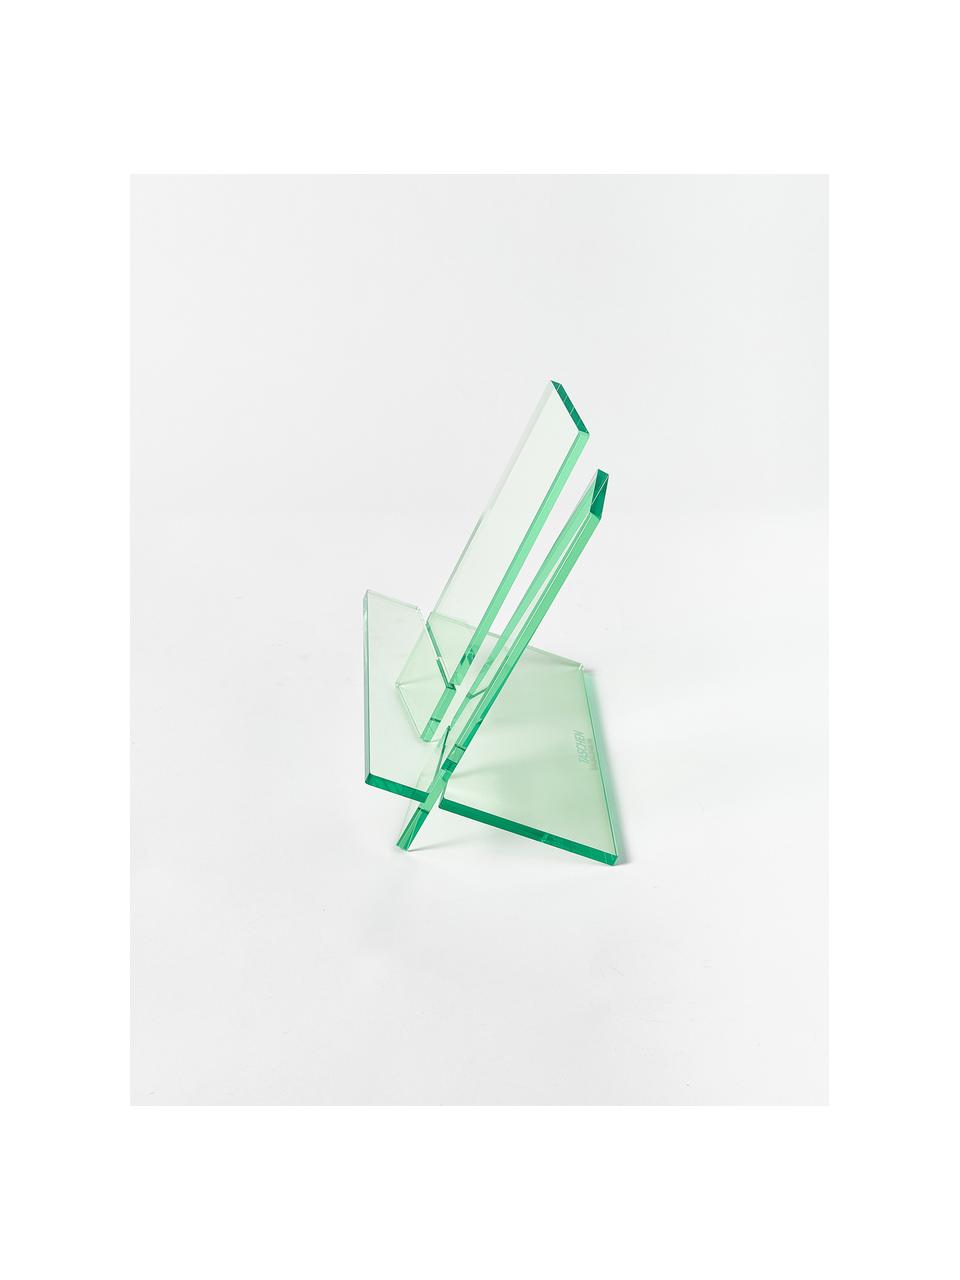 Leseständer Crystal, B 27 x H 25 cm, Acrylglas, Hellgrün, transparent, B 27 x H 25 cm